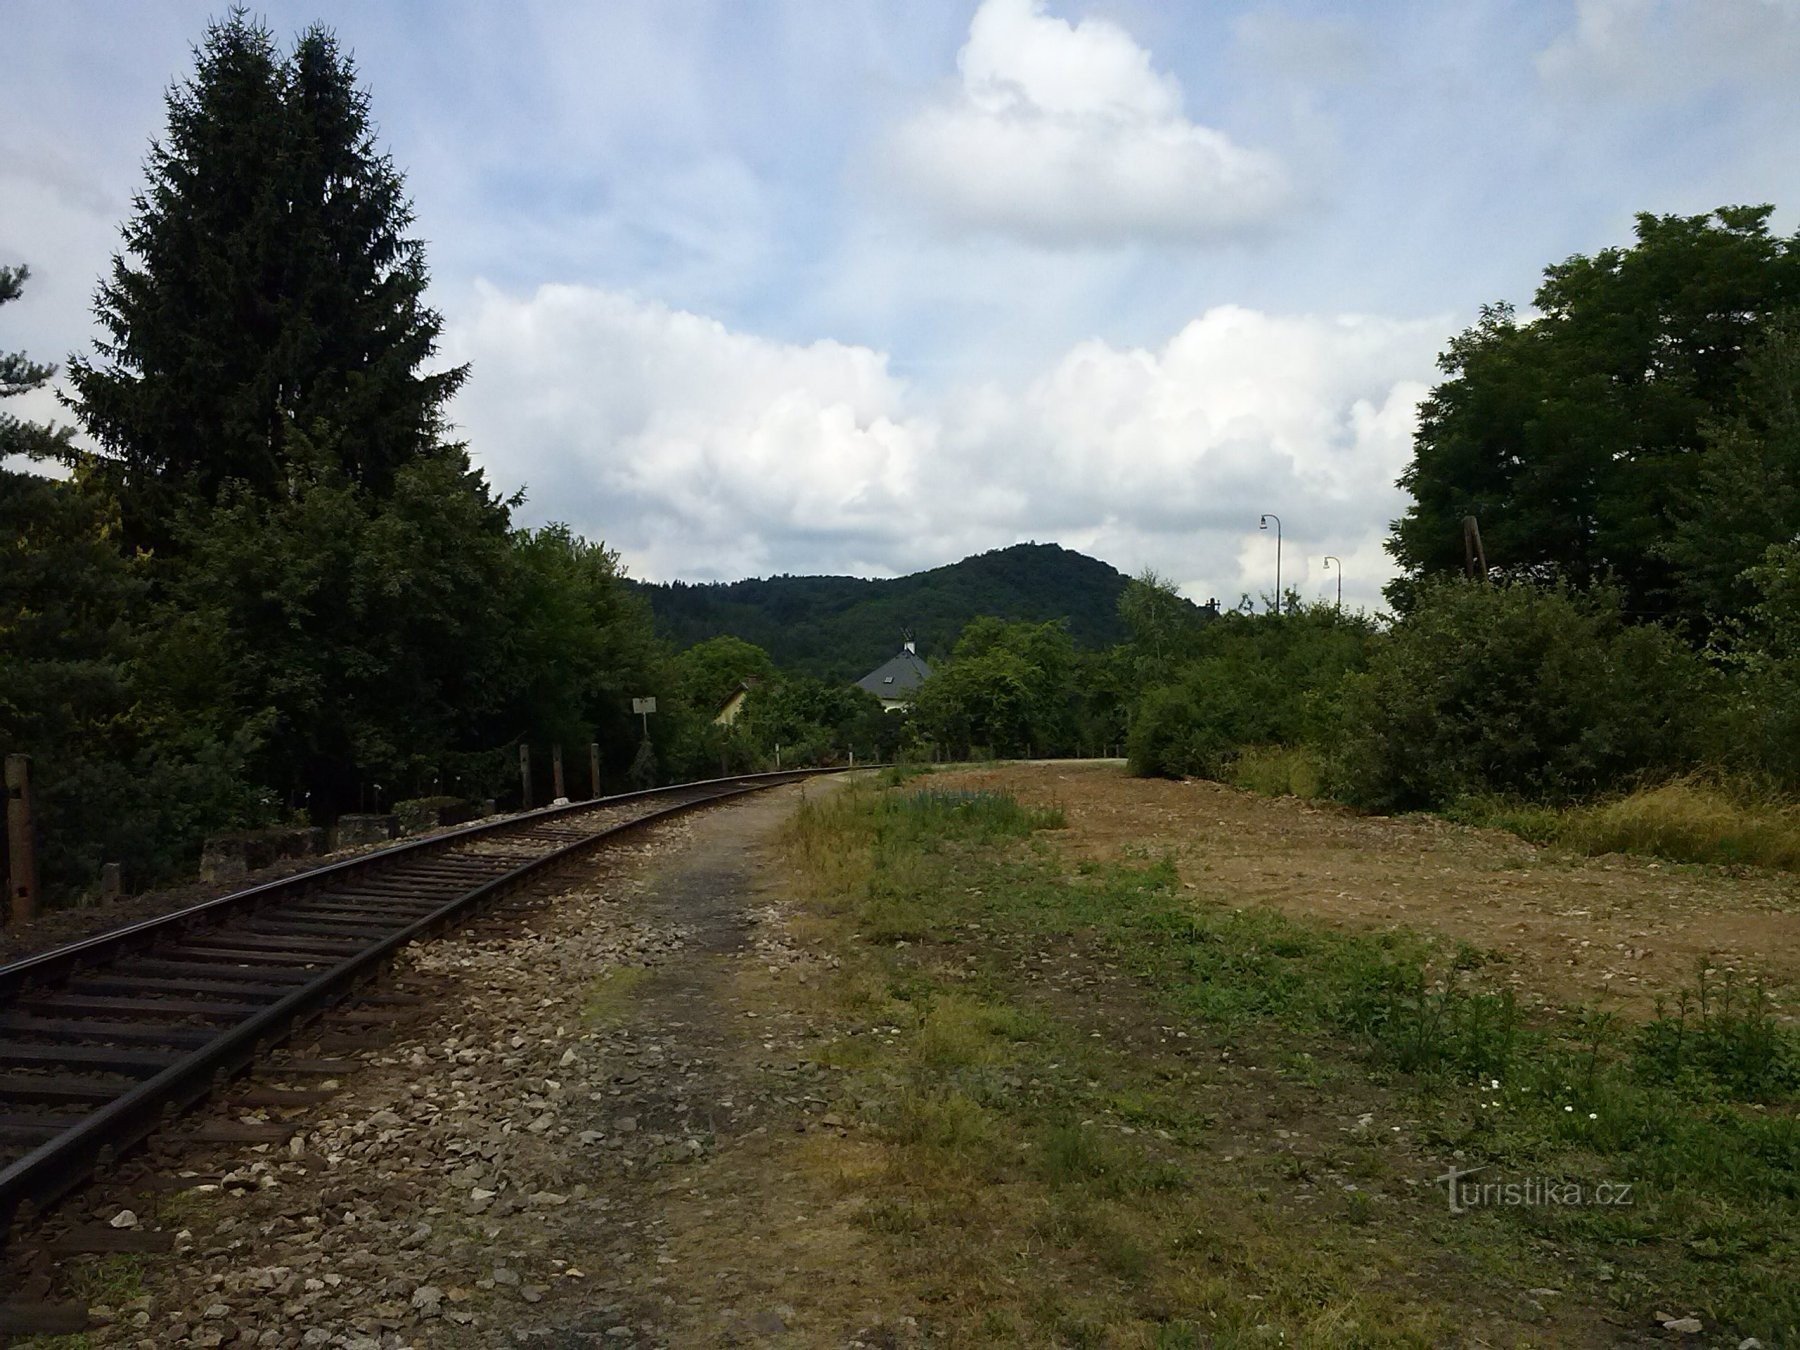 1. Nous nous dirigeons vers le train pour Týnec nad Sázavou - Medník à nouveau en arrière-plan